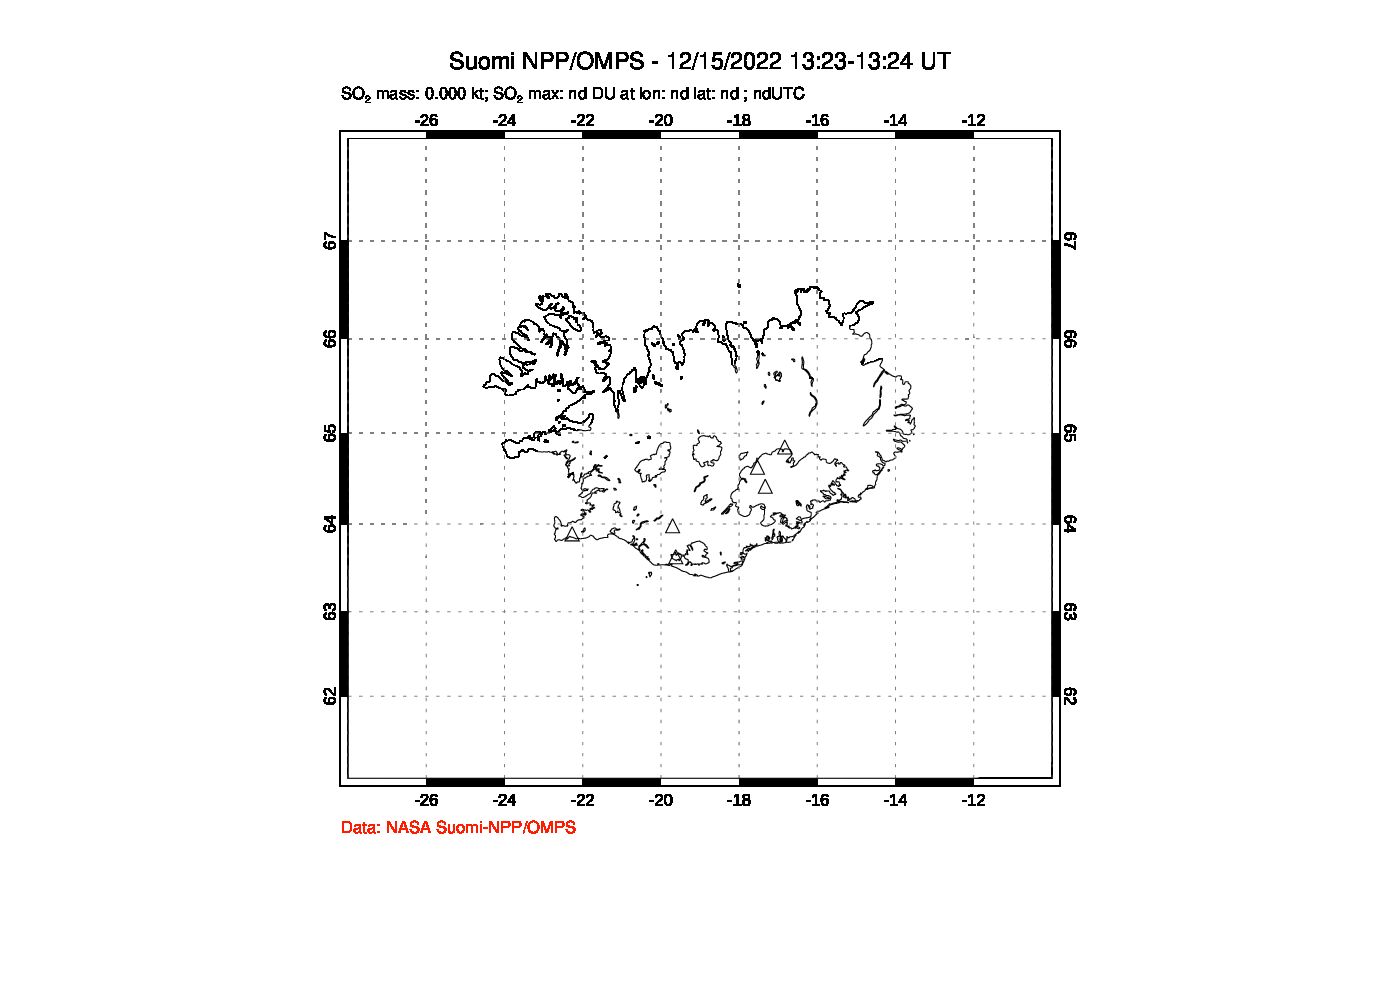 A sulfur dioxide image over Iceland on Dec 15, 2022.